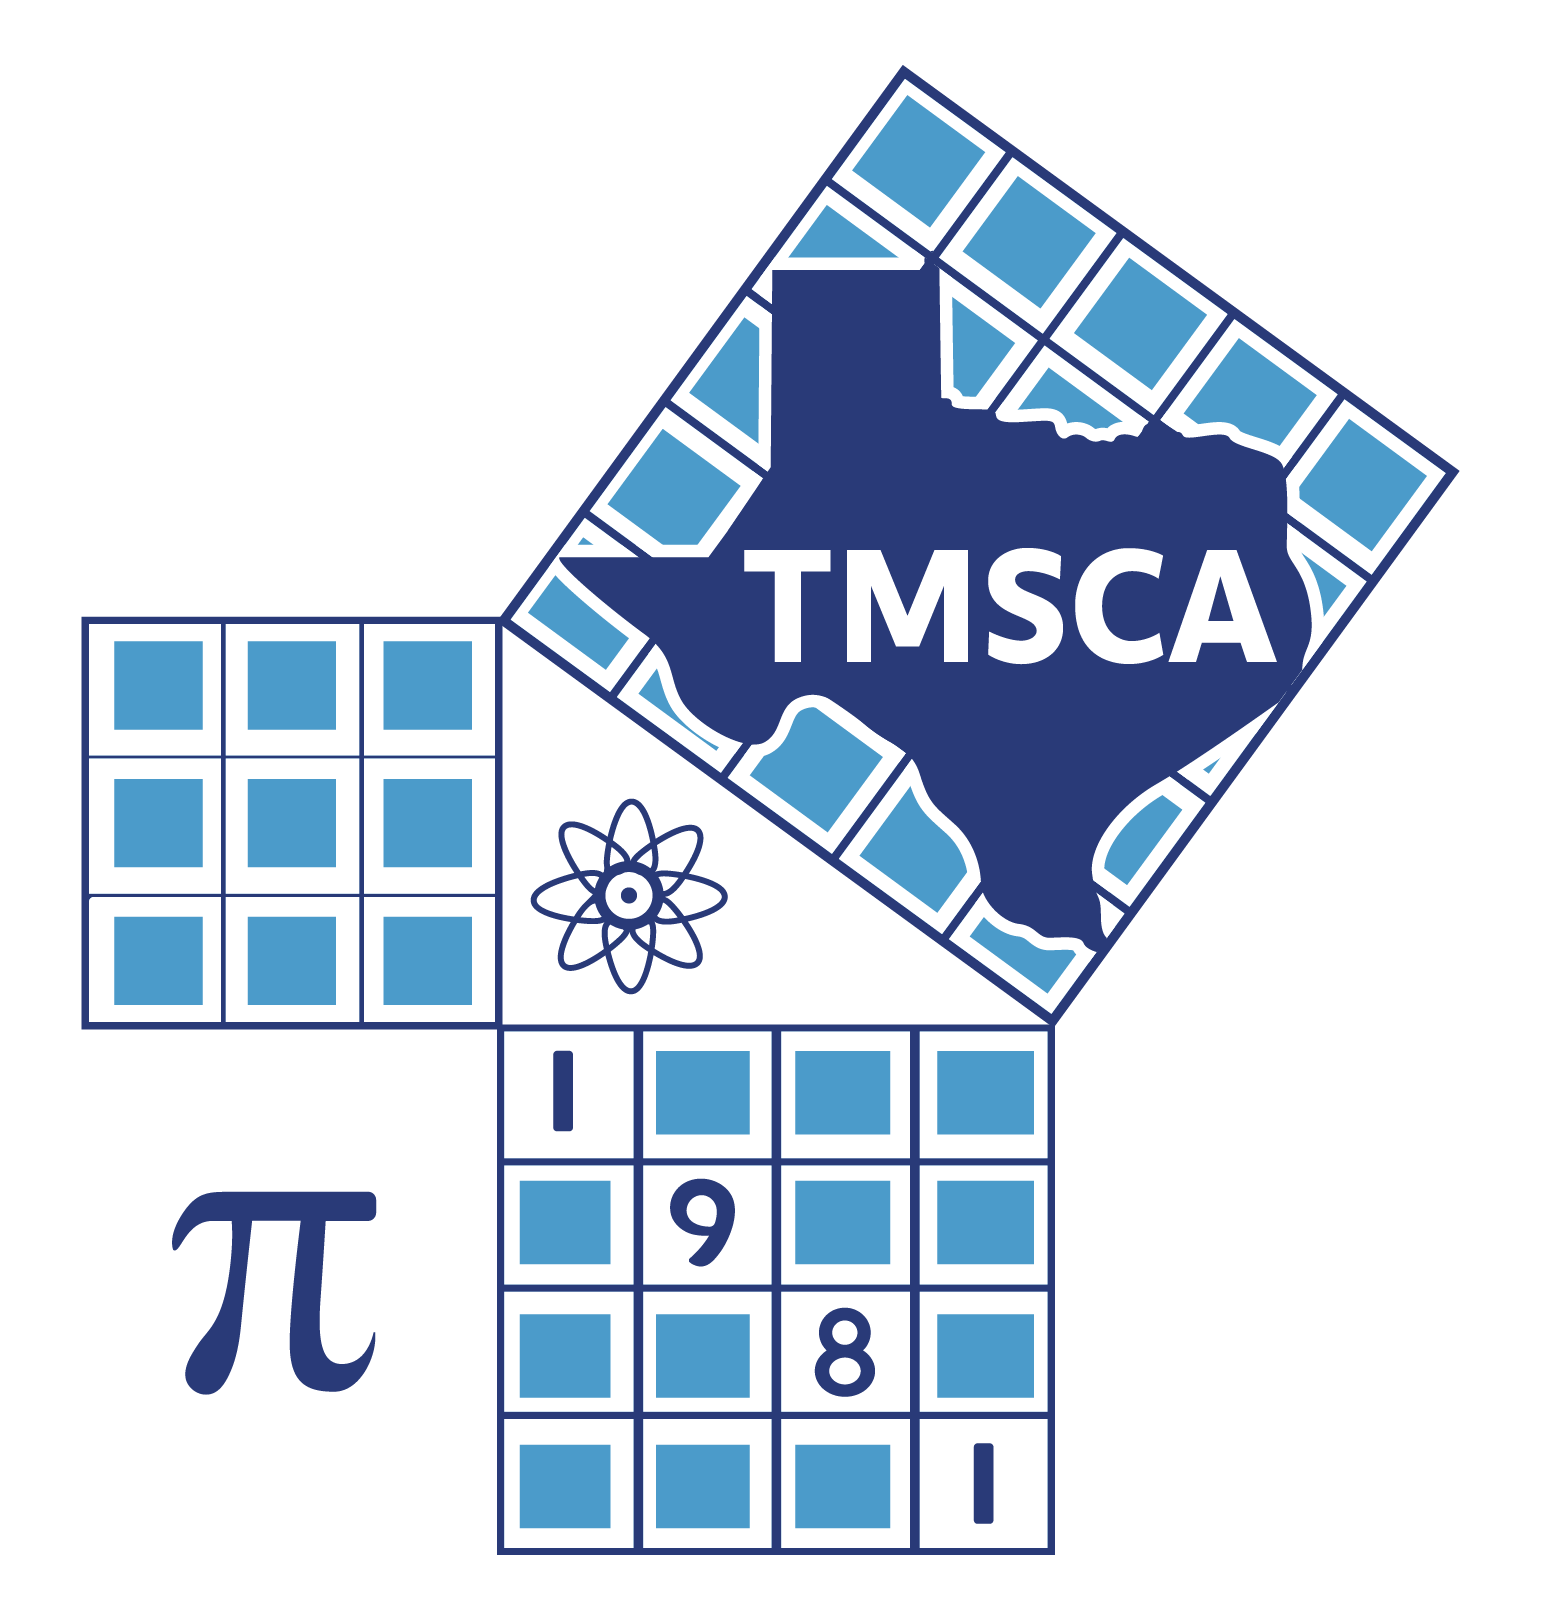 TMSCA logo